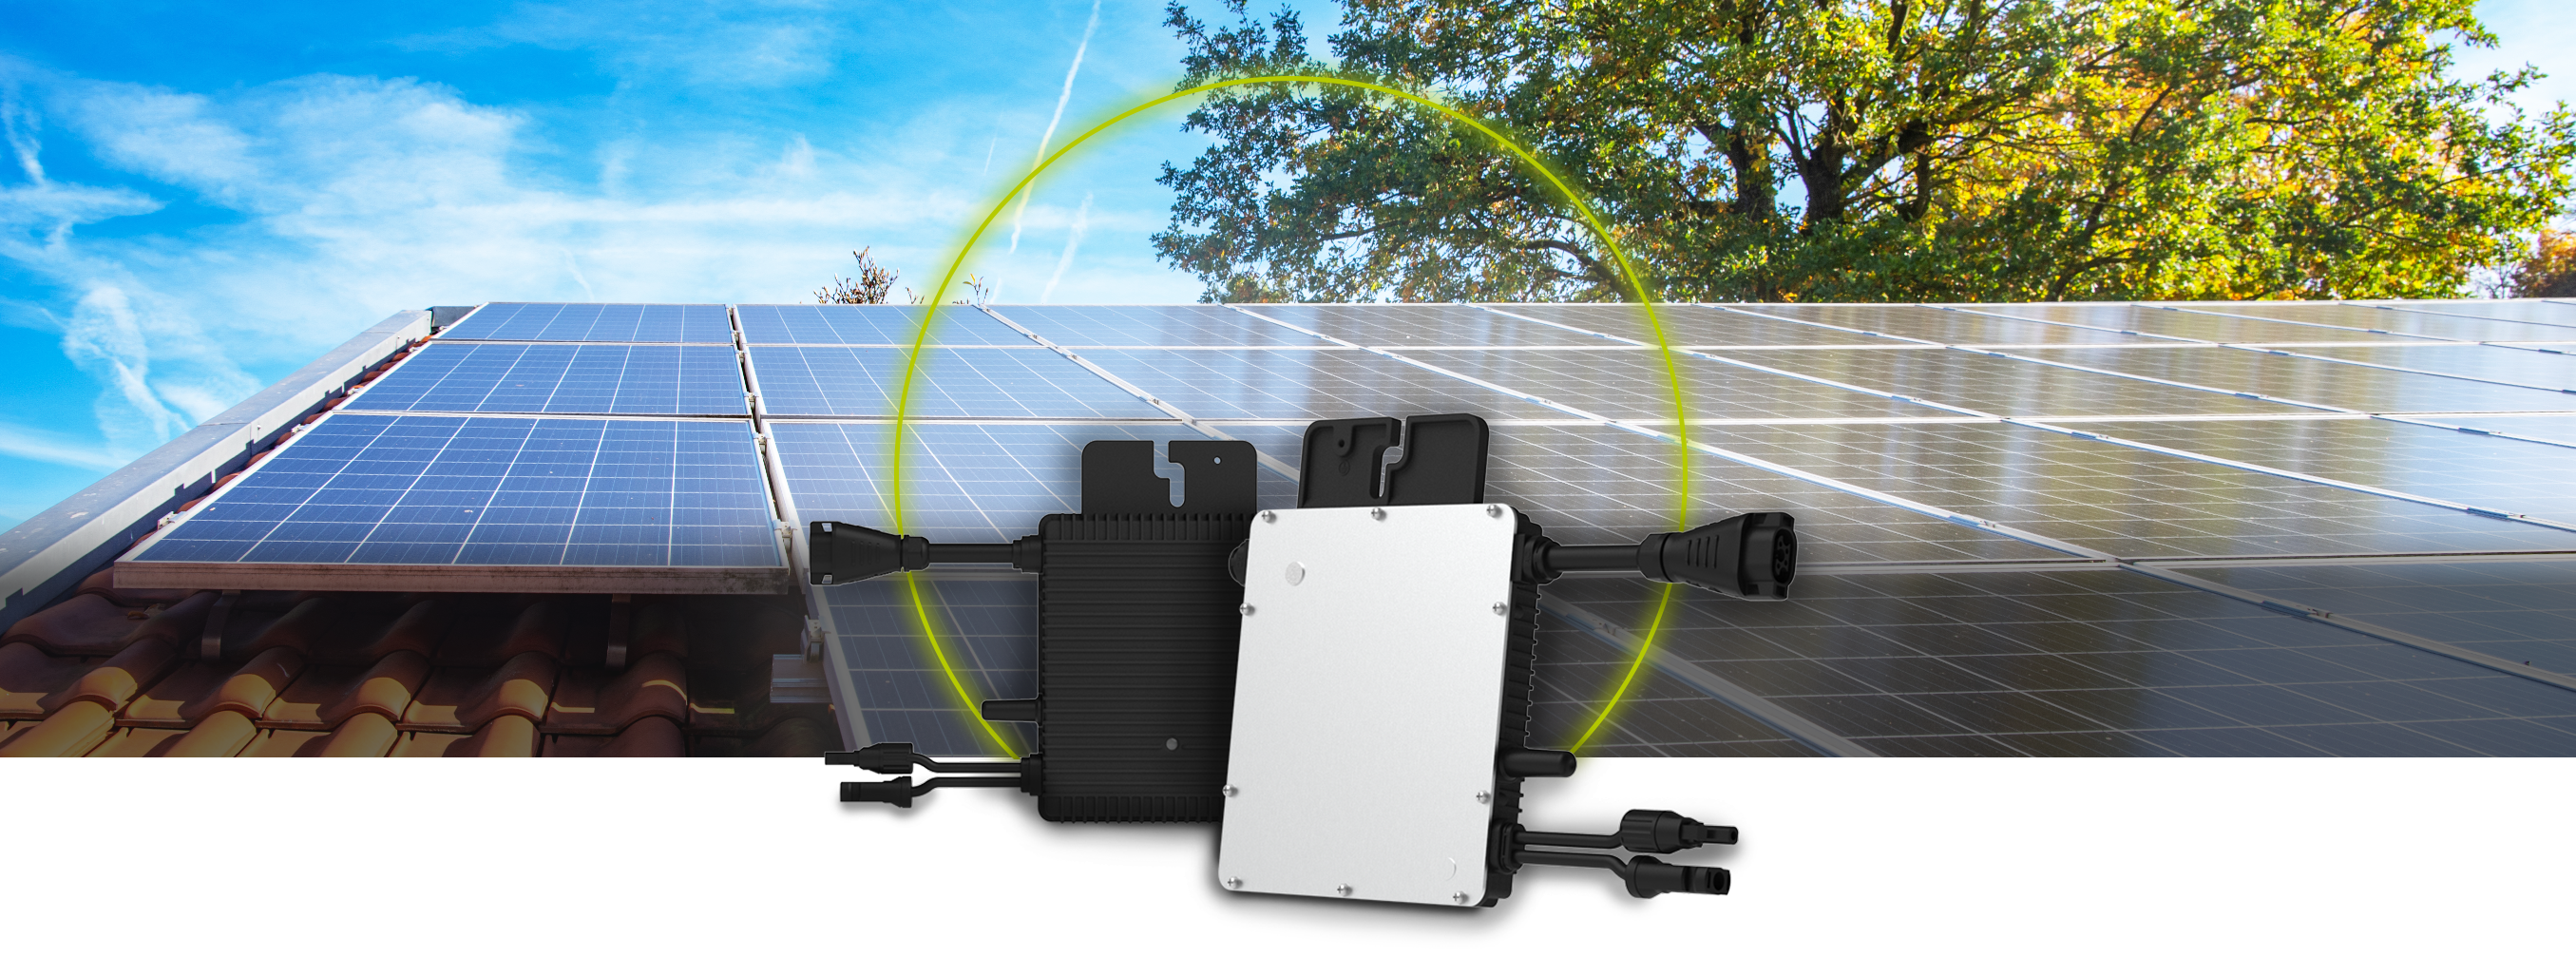 Câblez vos panneaux photovoltaïques à des micro-onduleurs et au réseau 230V  (DIY) 